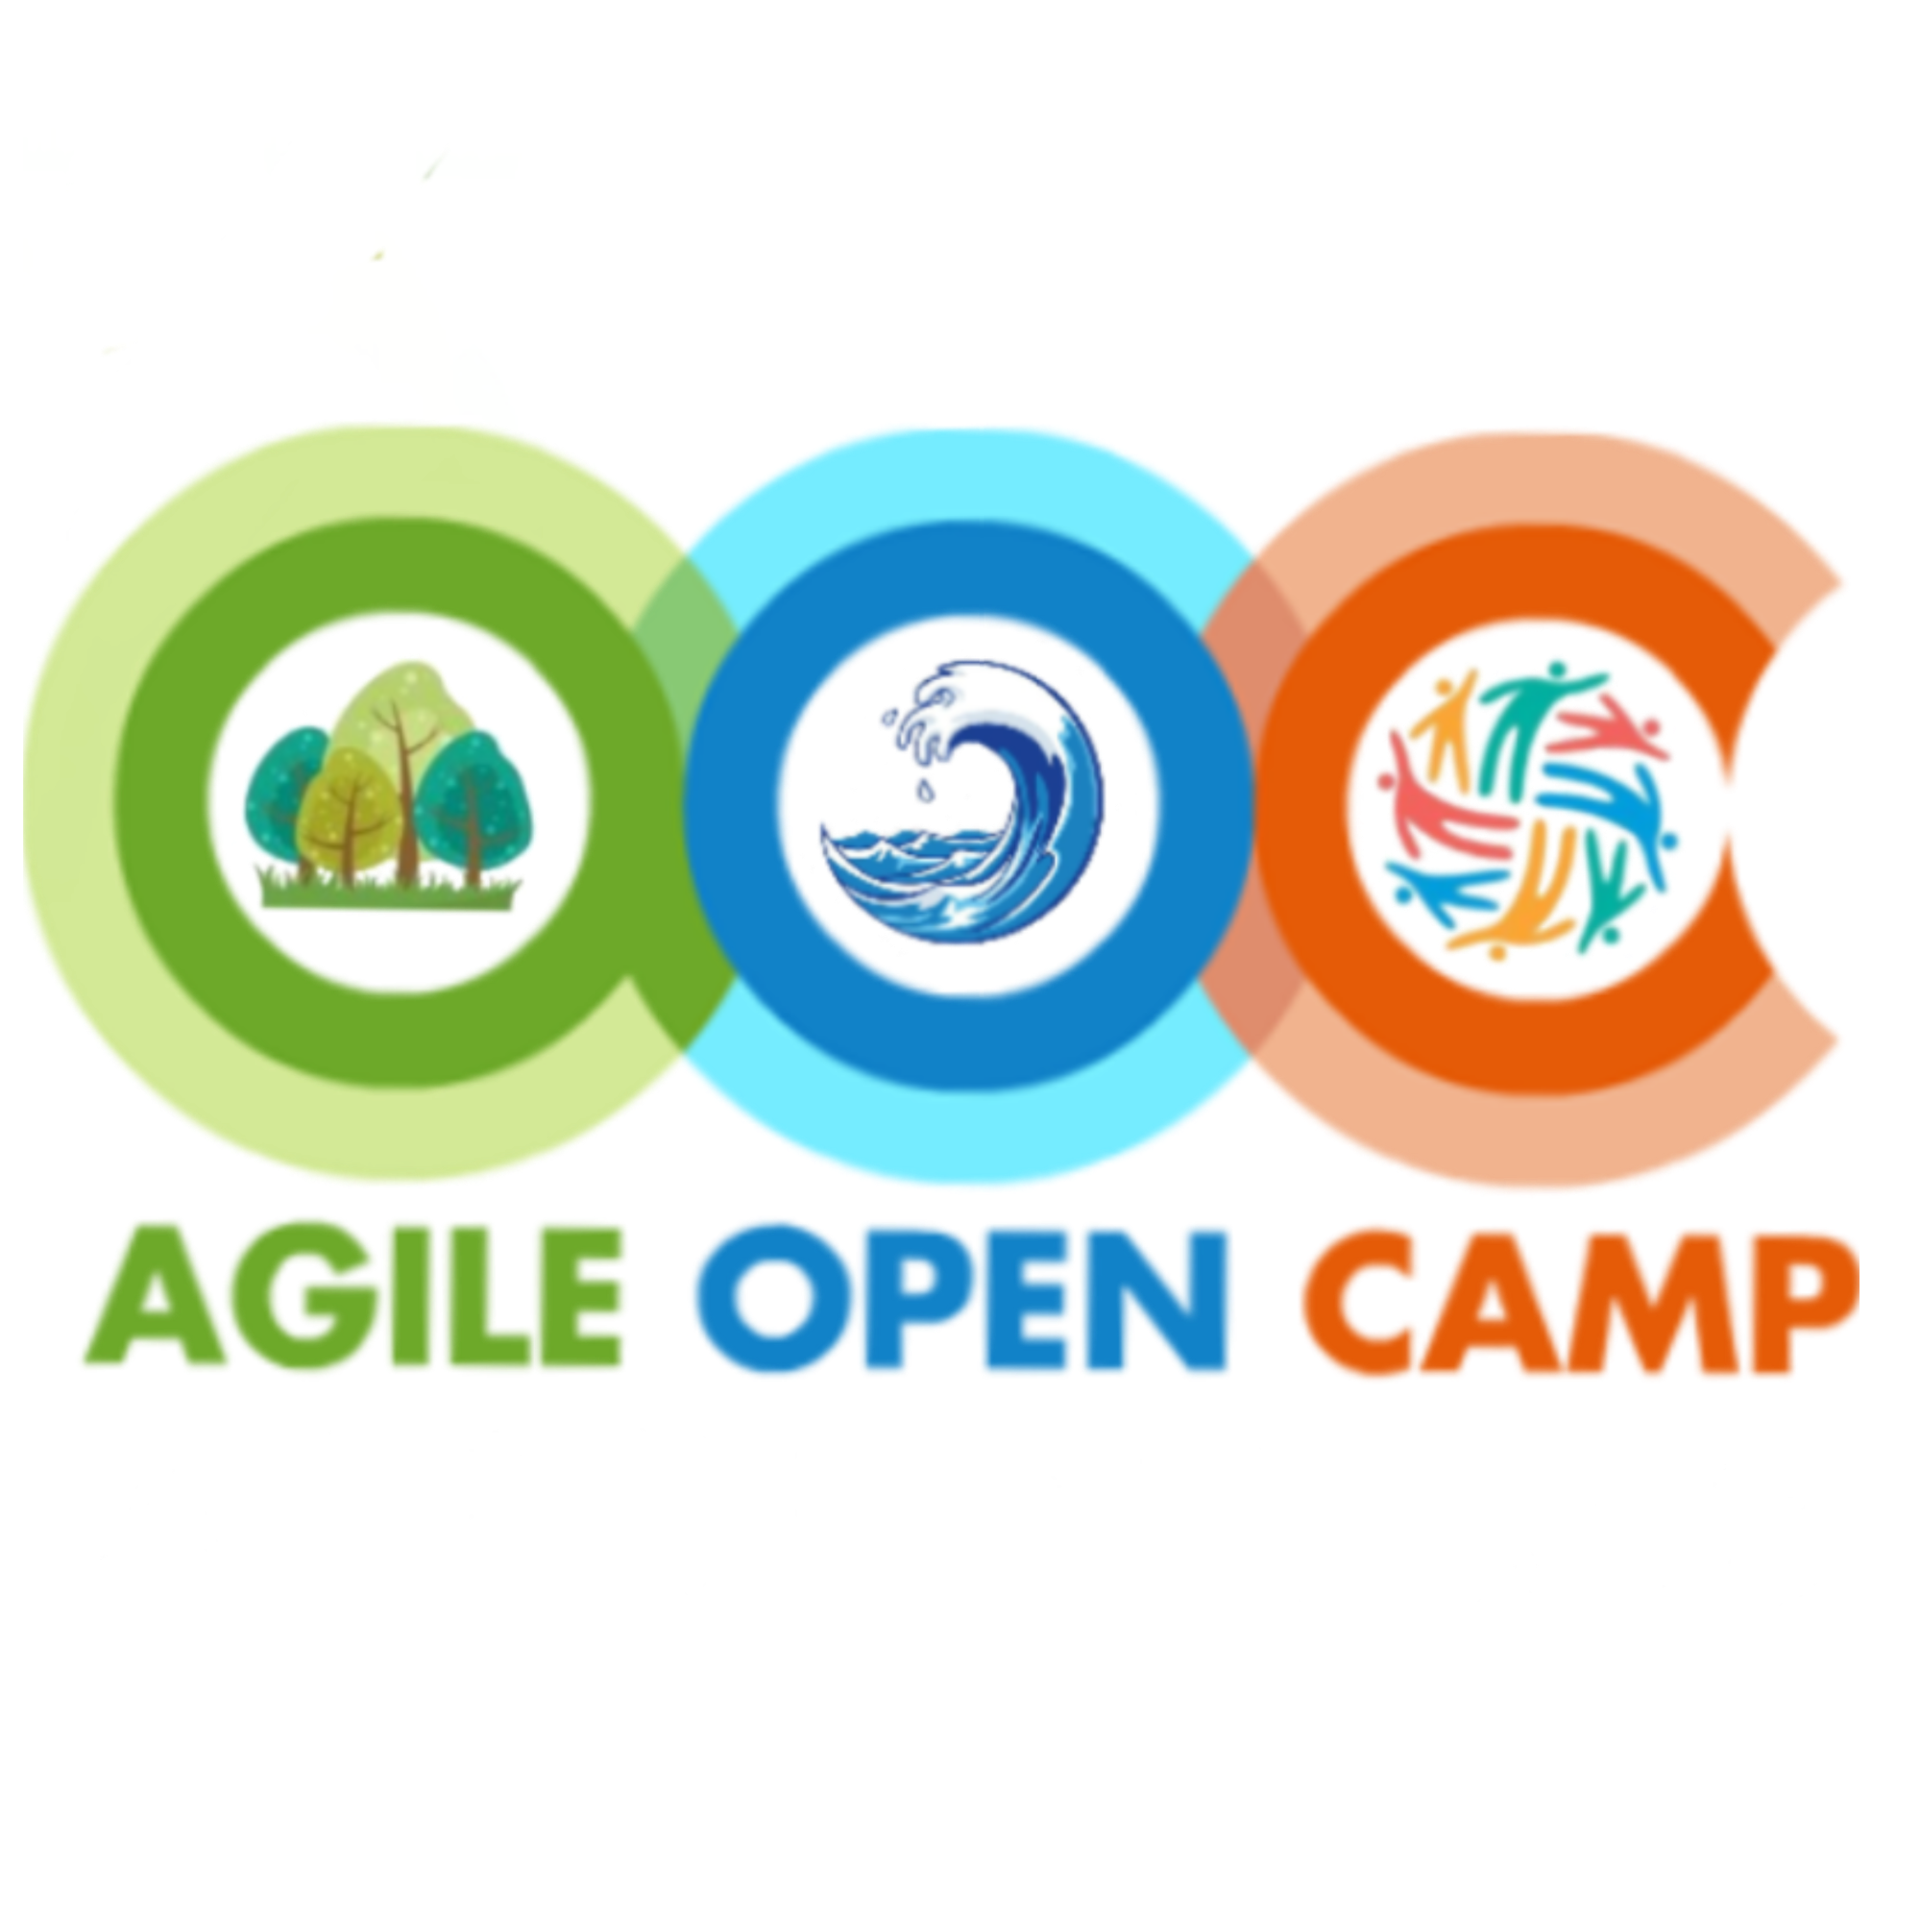 Agile Open Camp - Bariloche 2023